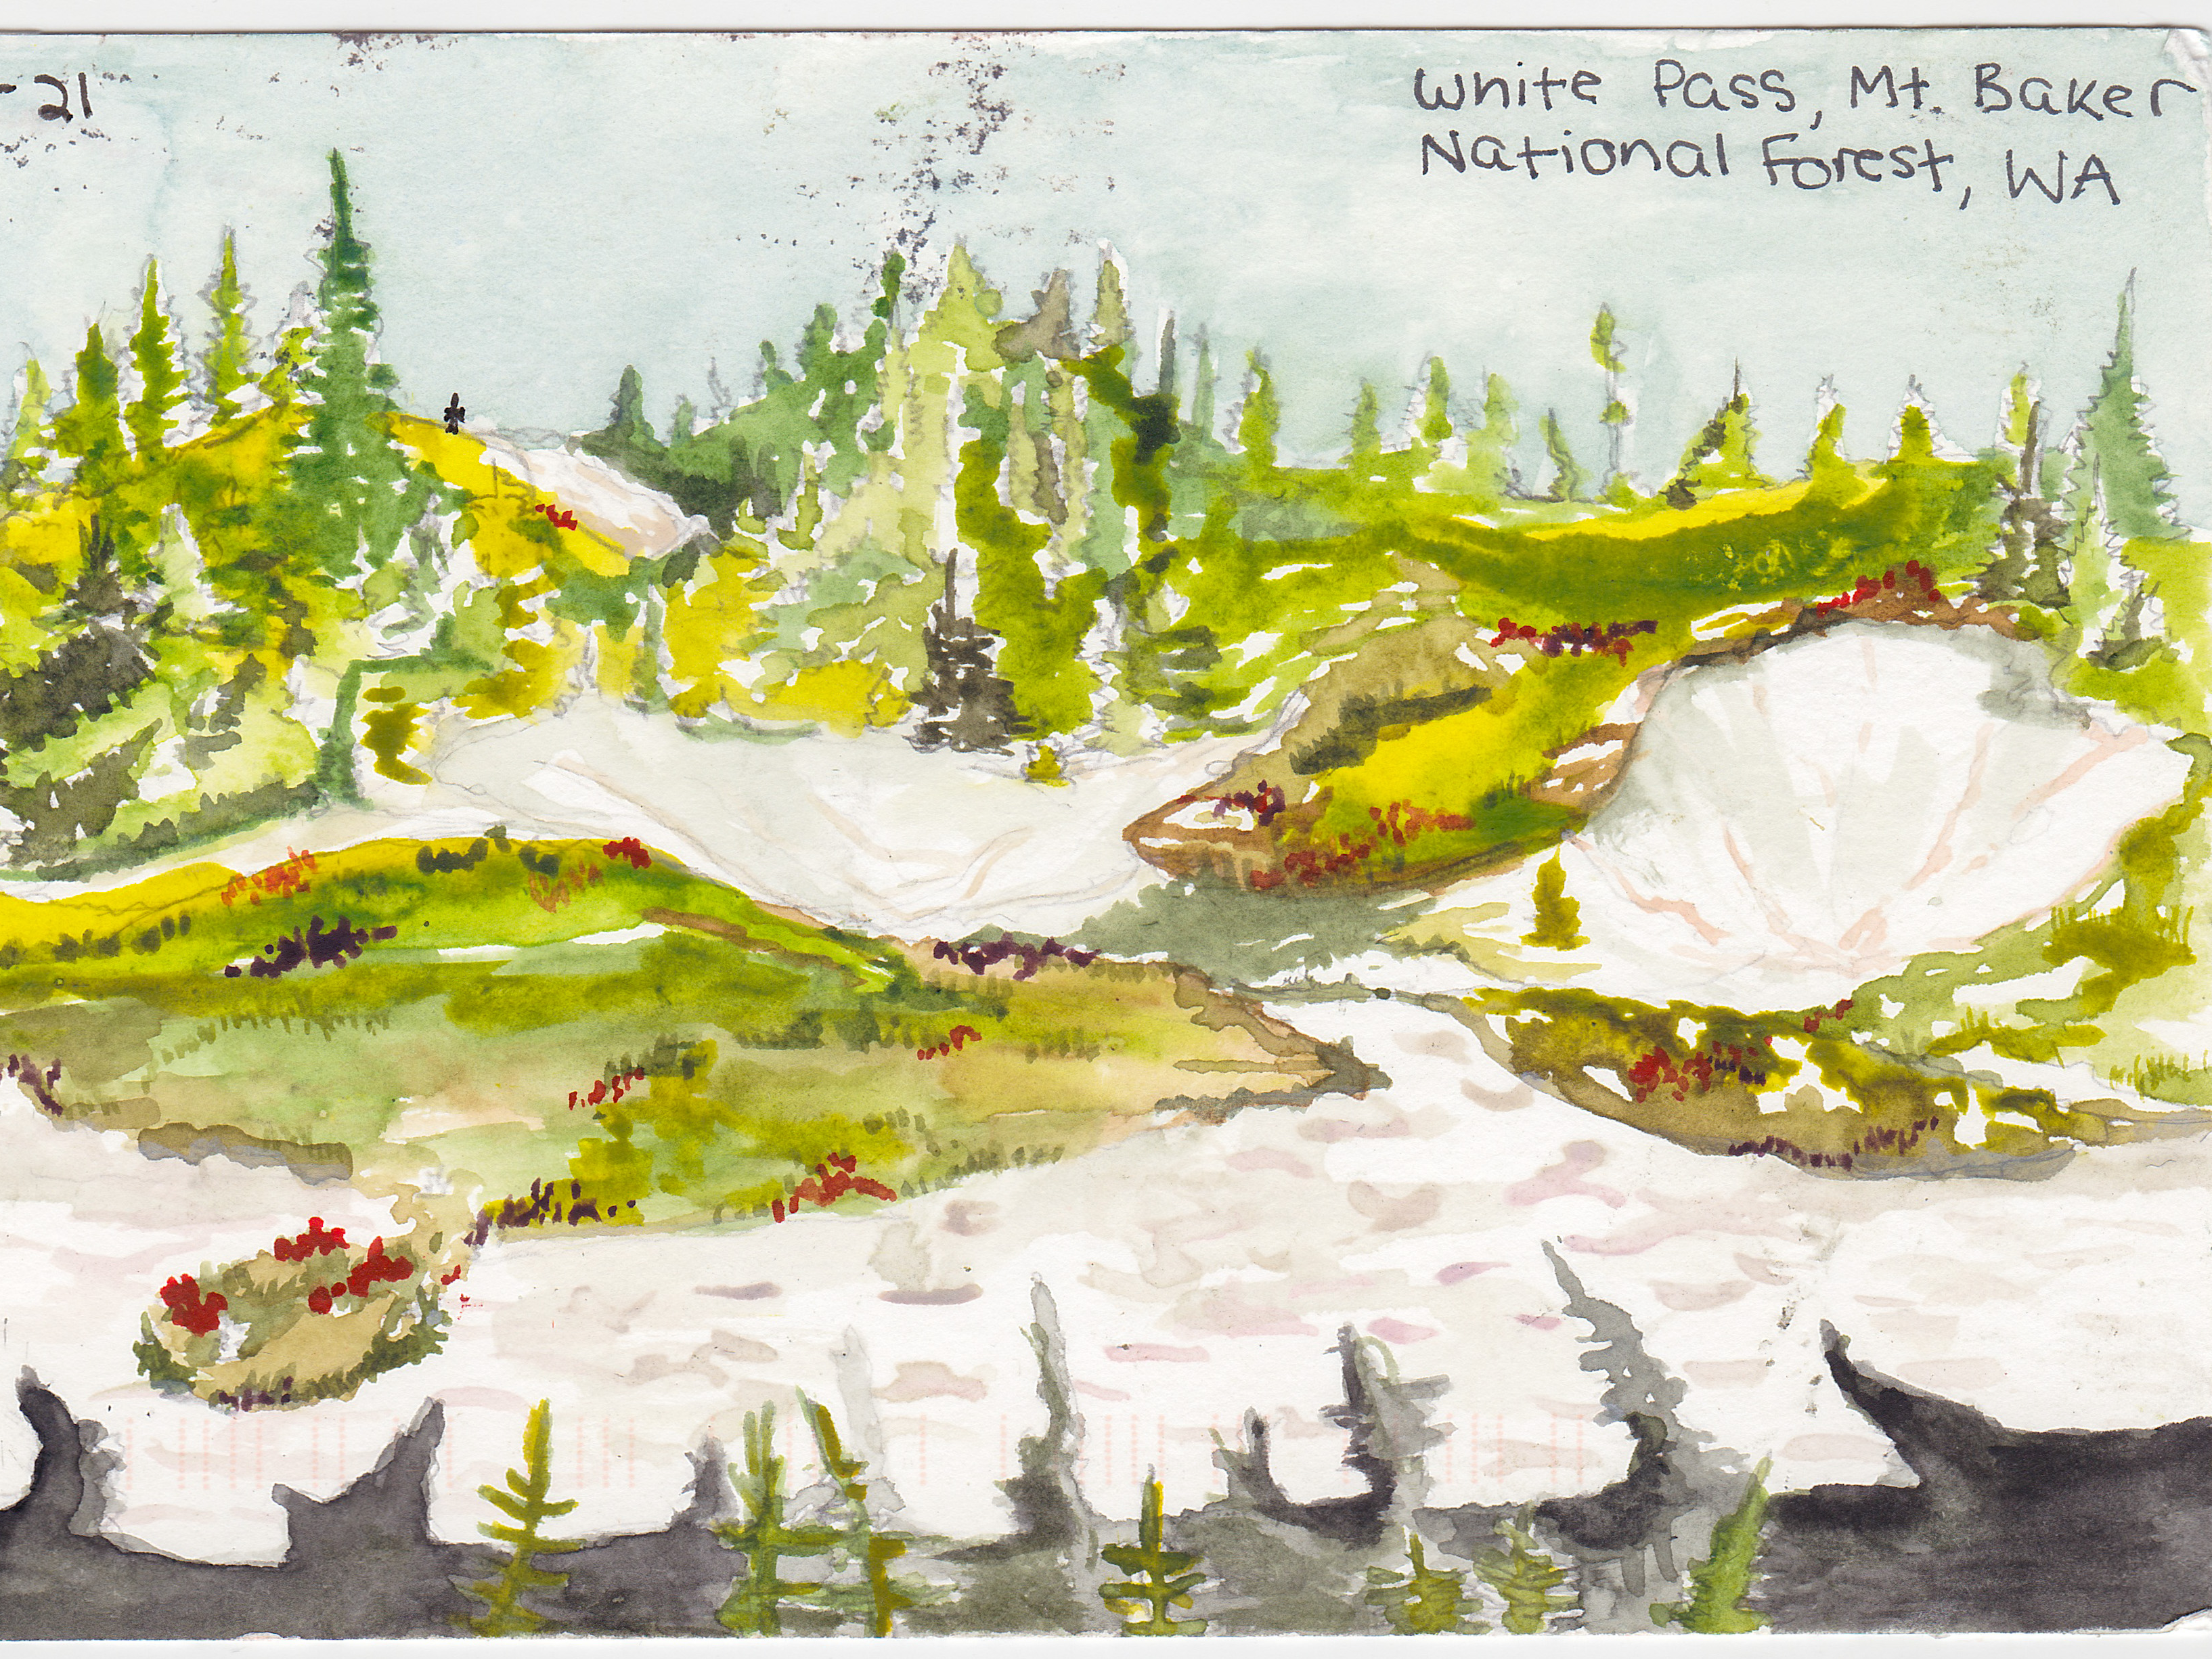 Акварельная картина Белого перевала в Национальном лесу Маунт-Бейкер с зеленой травой и красными цветами, смешанными со снежными полями и деревьями на расстоянии.